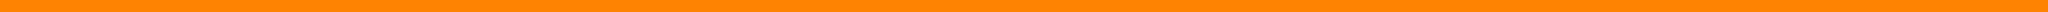 Pomarańczowy pasek